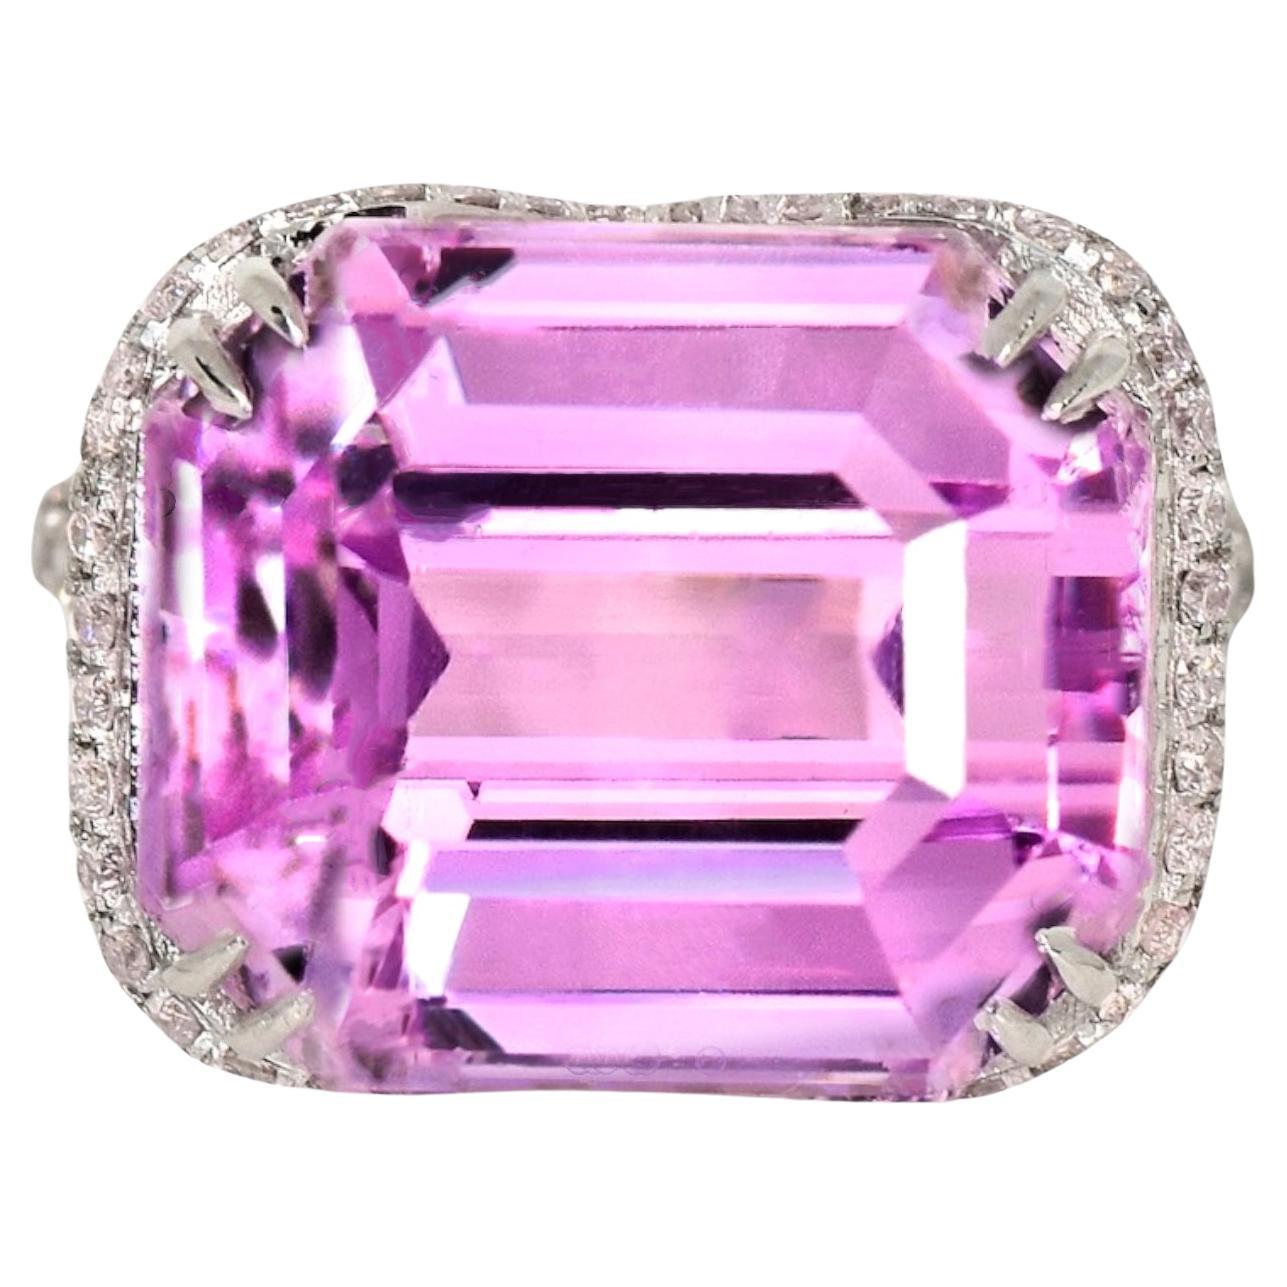 IGI 19.46 ct Natural Pink Kunzite with Pink Diamond Engagement Ring